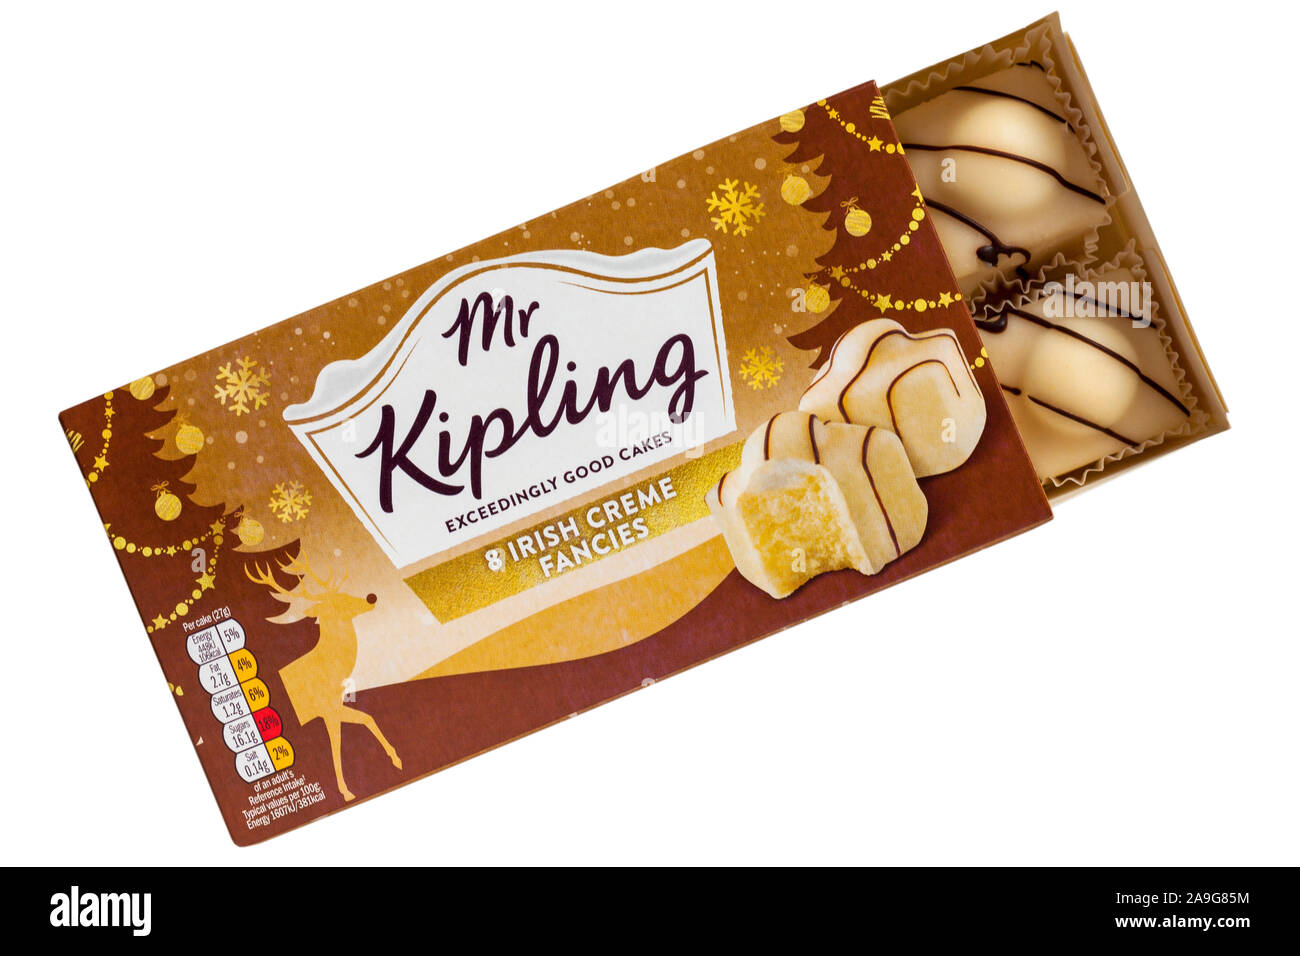 Box von Herr Kipling 8 irische Crème Phantasien, die überaus guten Kuchen geöffnet Inhalte auf weißem Hintergrund zu zeigen Stockfoto